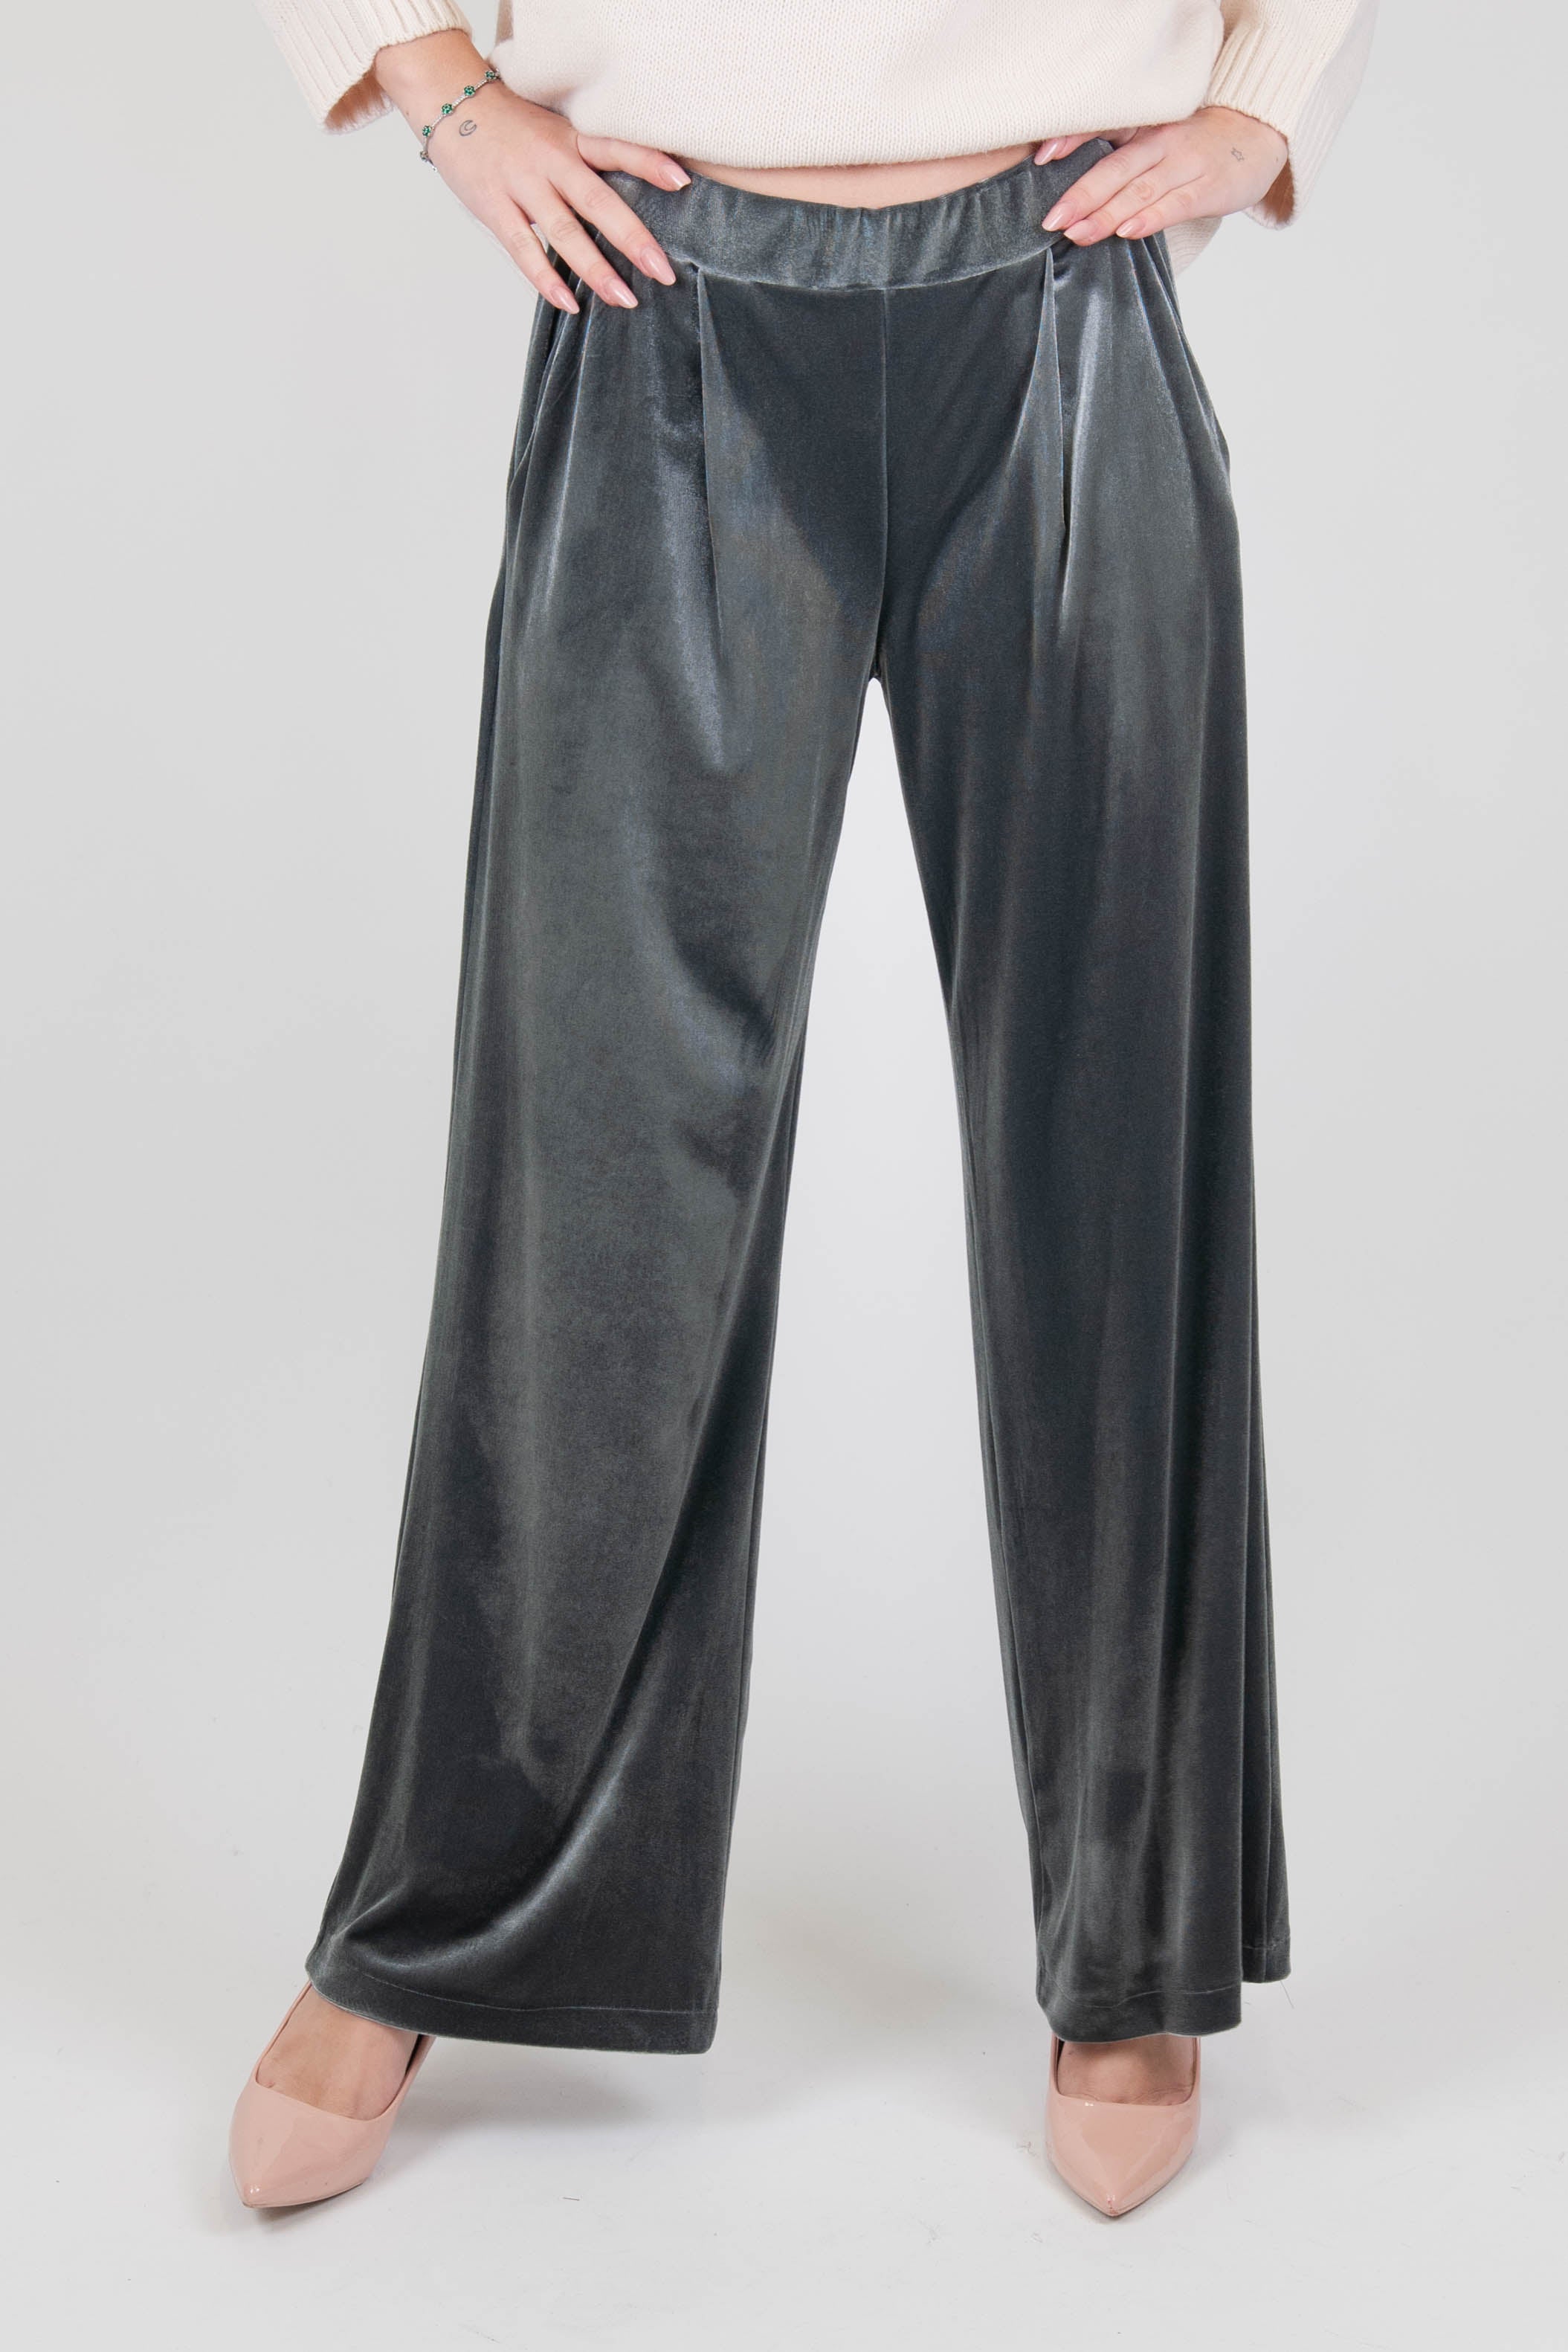 Dixie - Pantalone palazzo in velluto con elastico sul retro